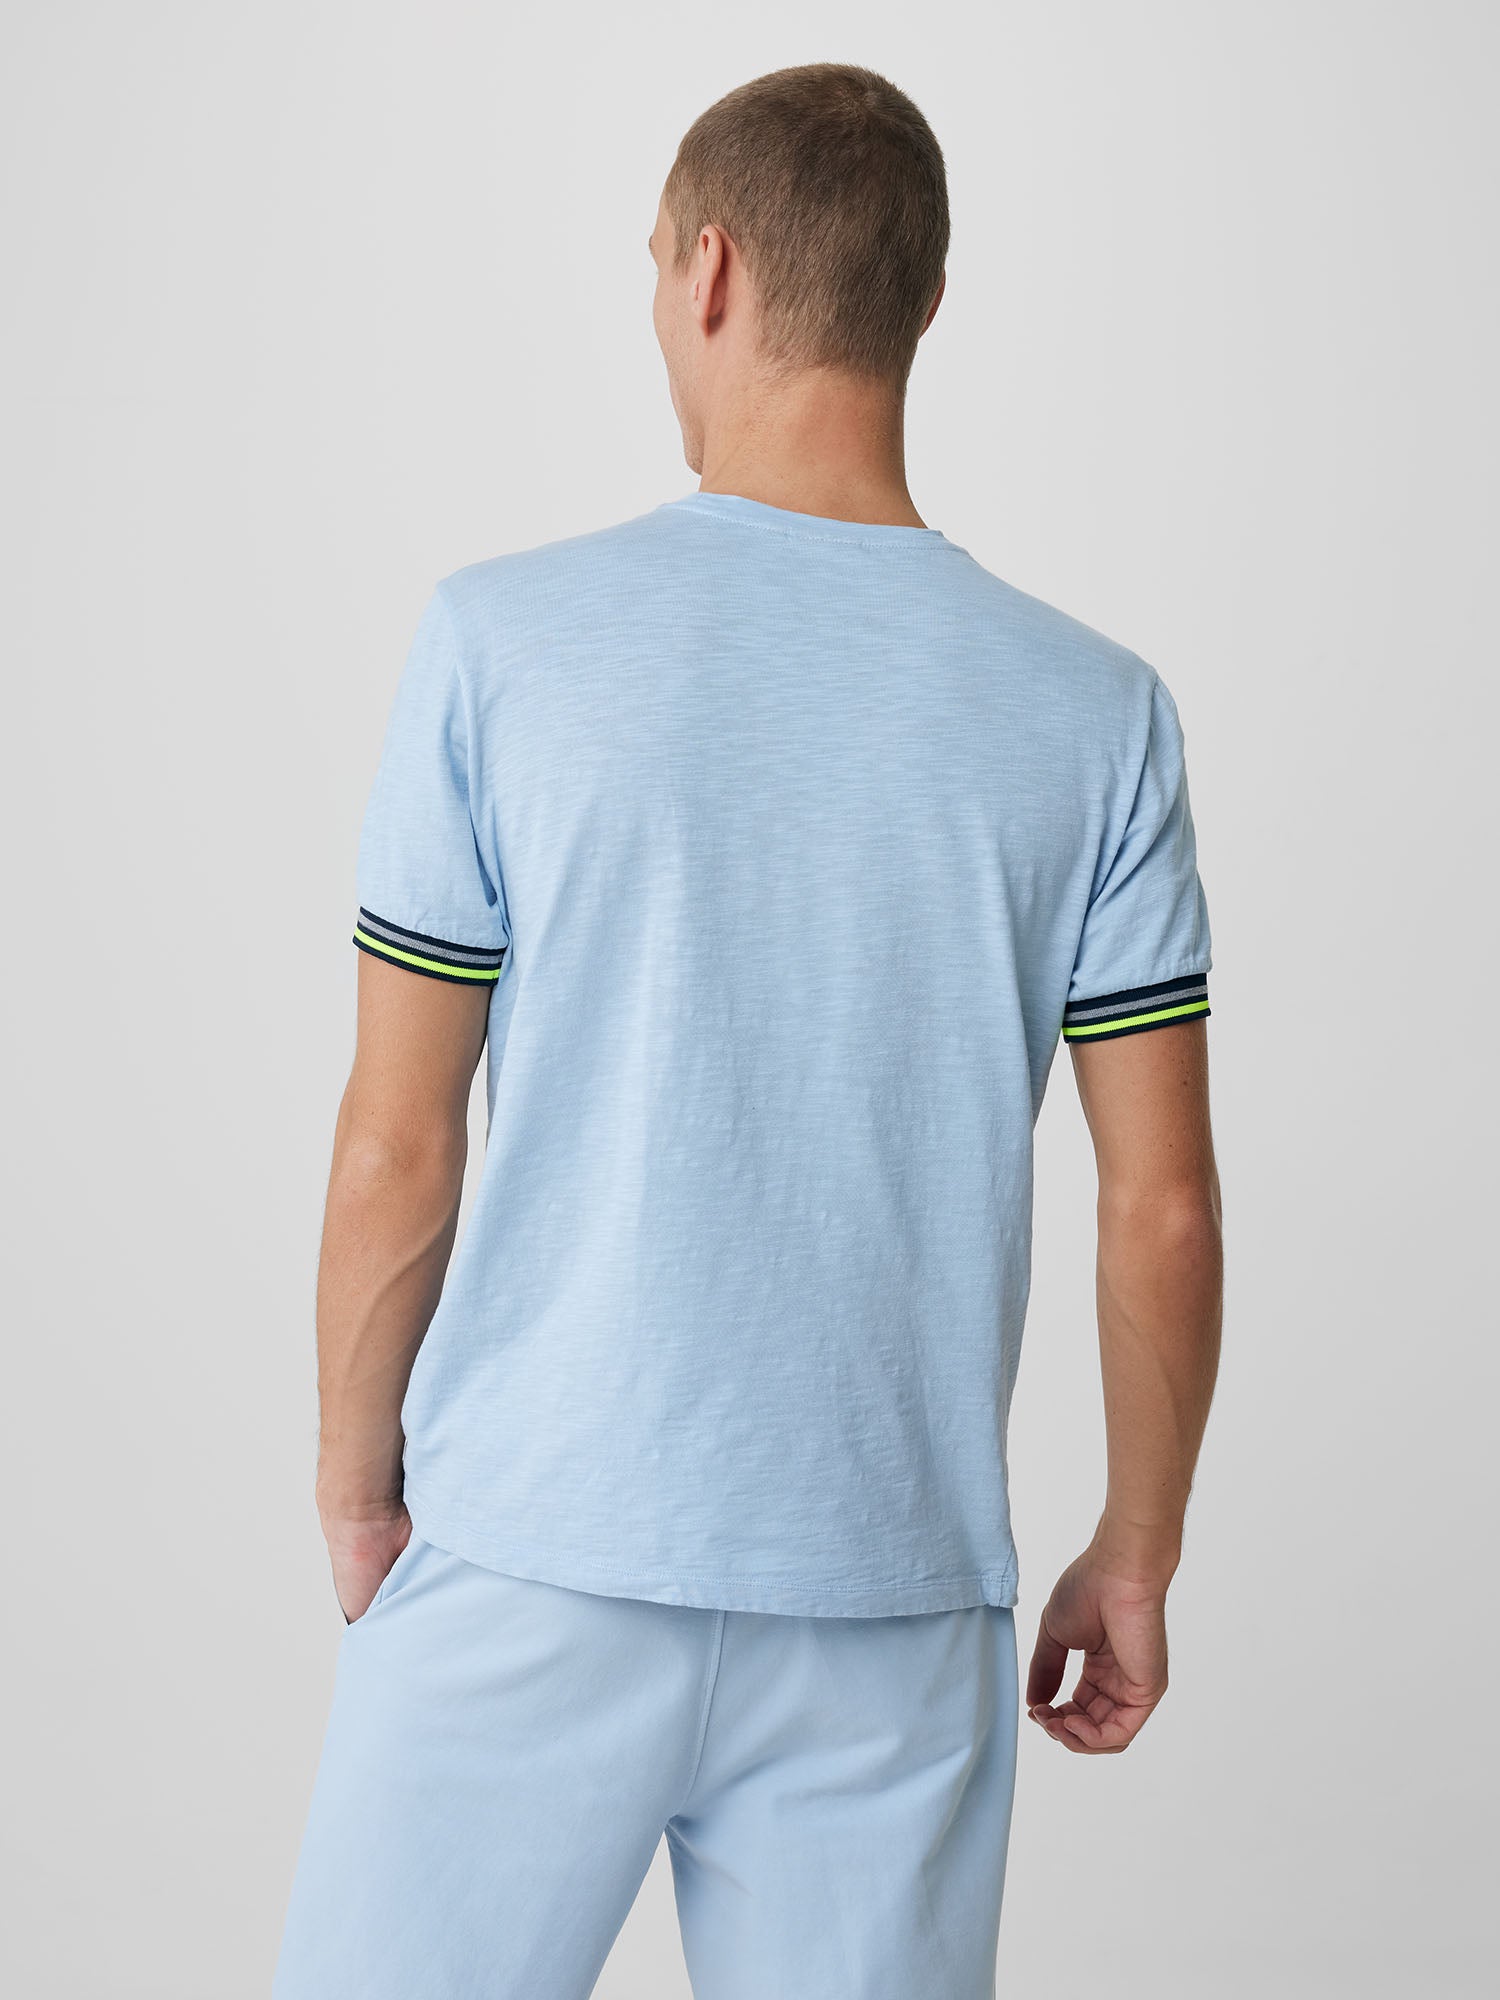 Genti T-shirt - Lichtblauw